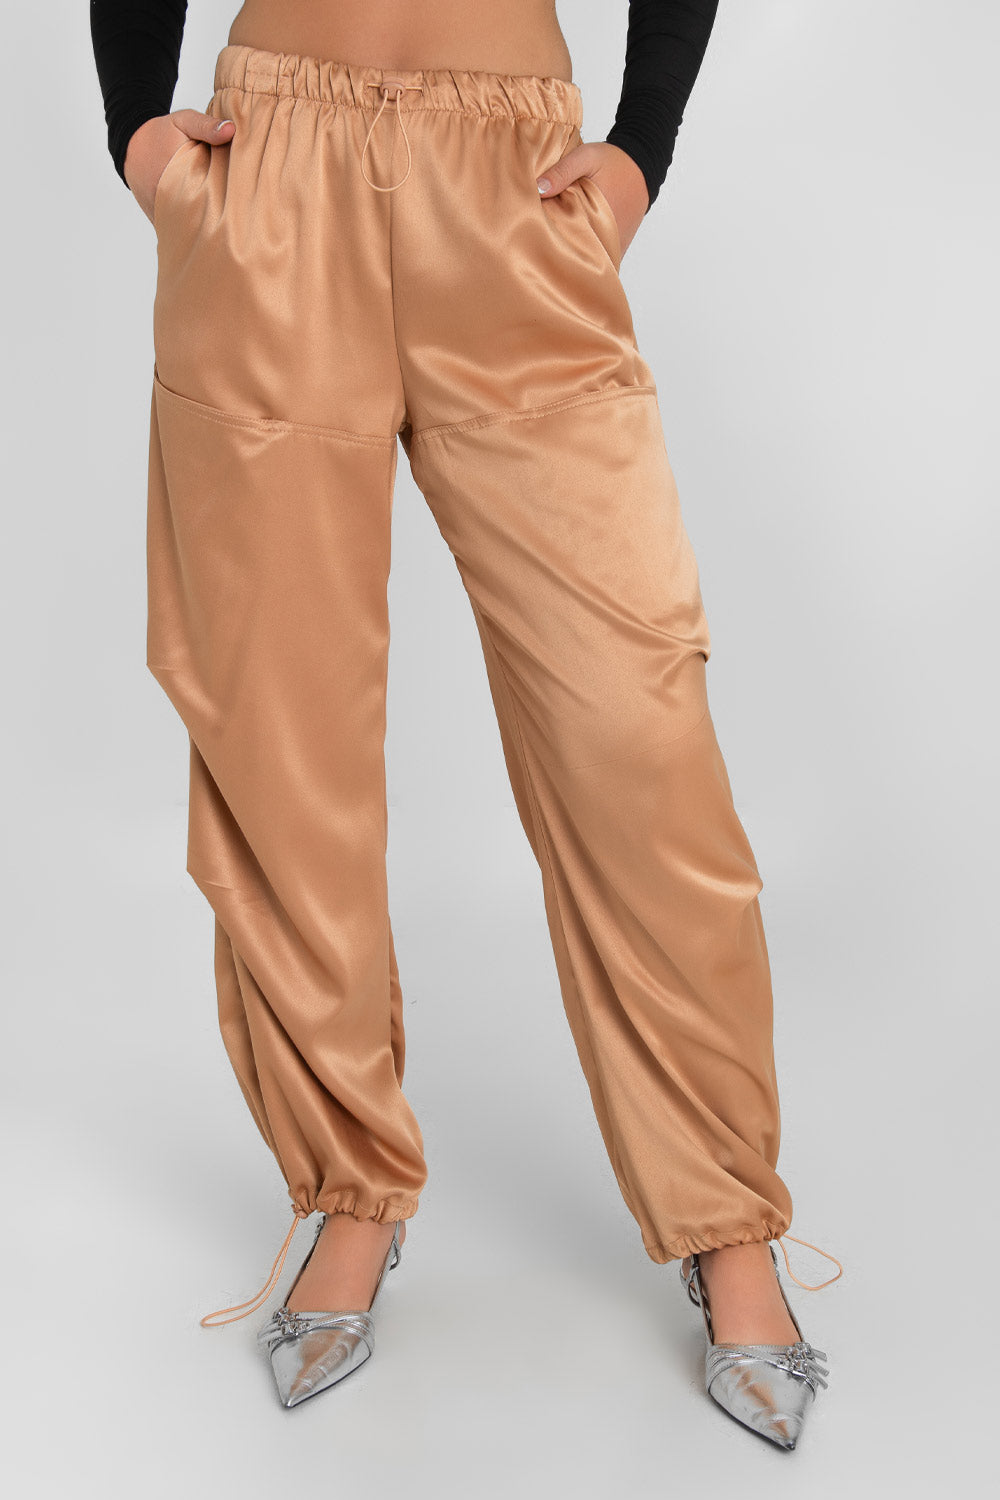 Pantalón parachute satinado de cintura alta con pretina elástica y jareta ajustable, de pierna amplia, plisados decorativos frontales, detalle de bajo con jaretas elásticas ajustables.